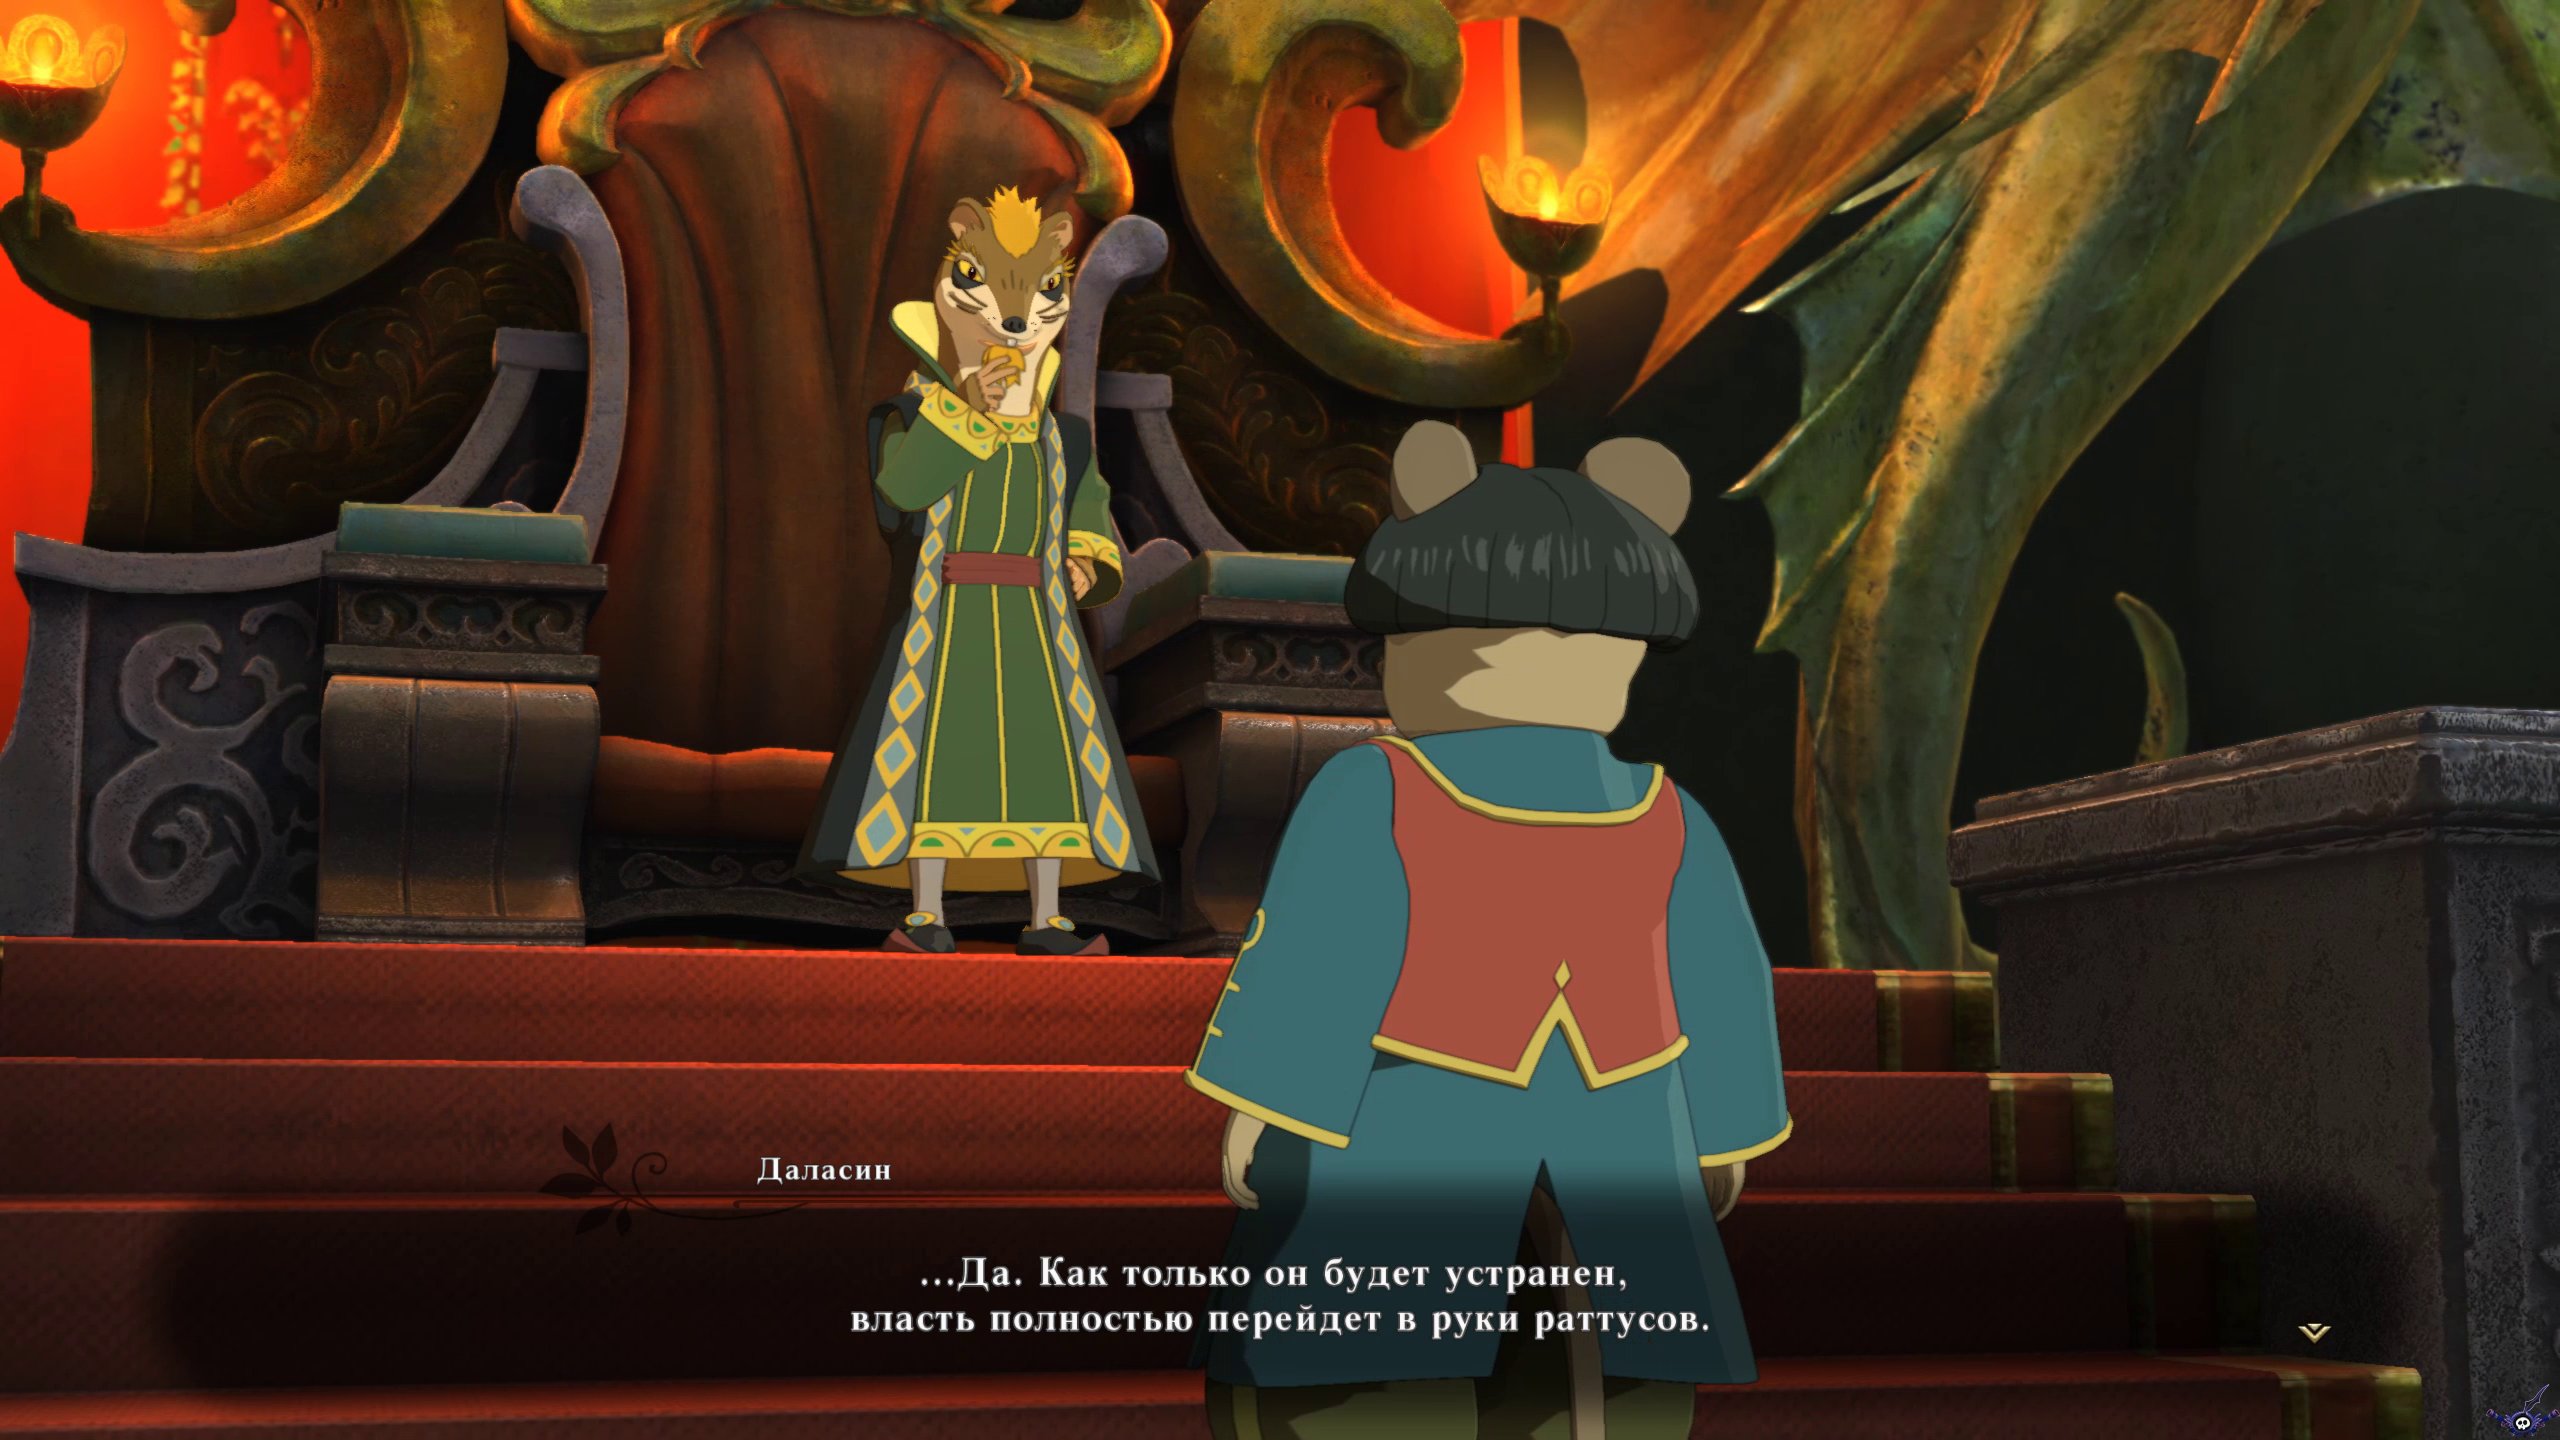 ni-no-kuni-ii-revenant-kingdom-screenshot